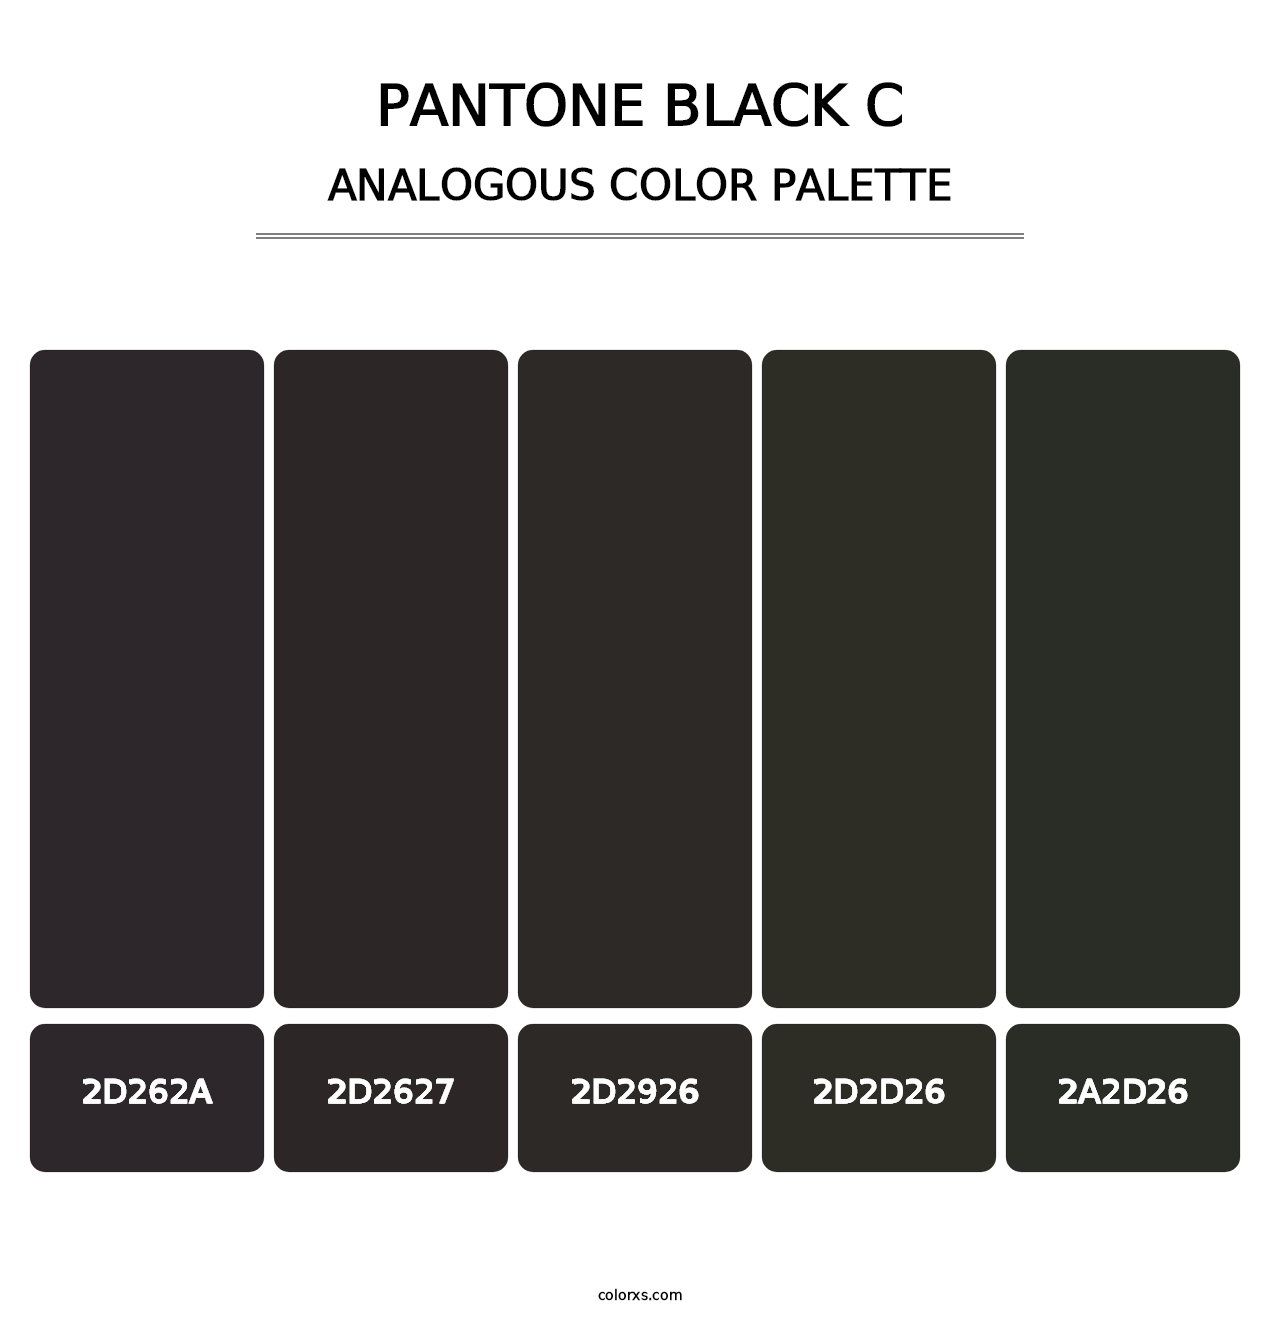 PANTONE Black C - Analogous Color Palette